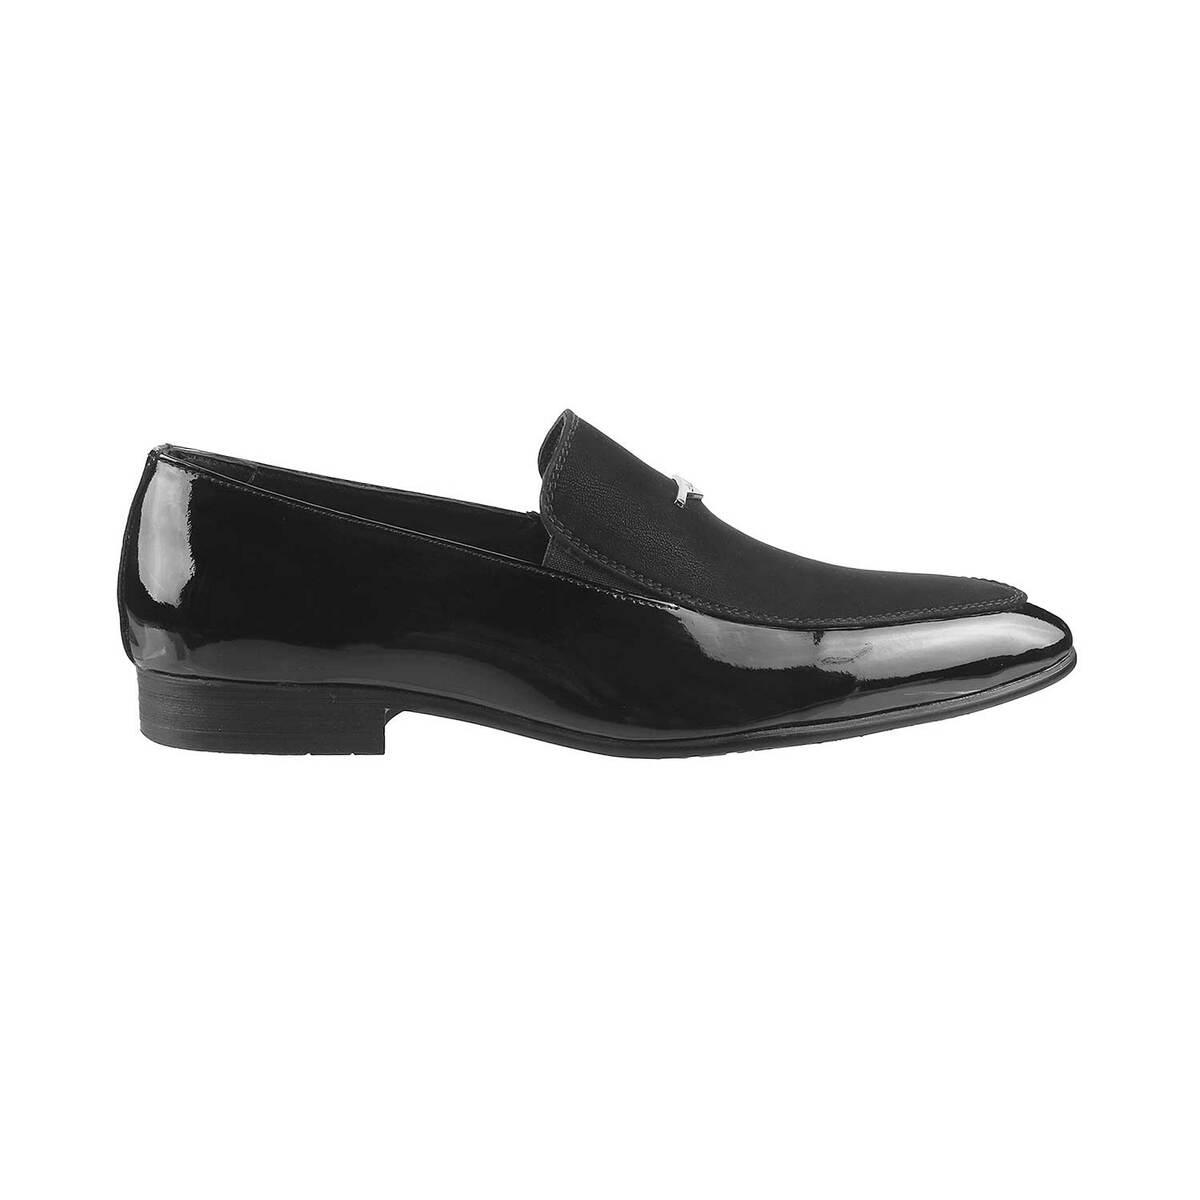 Buy Men Black Formal Moccasin Online | SKU: 14-1166-11-40-Metro Shoes